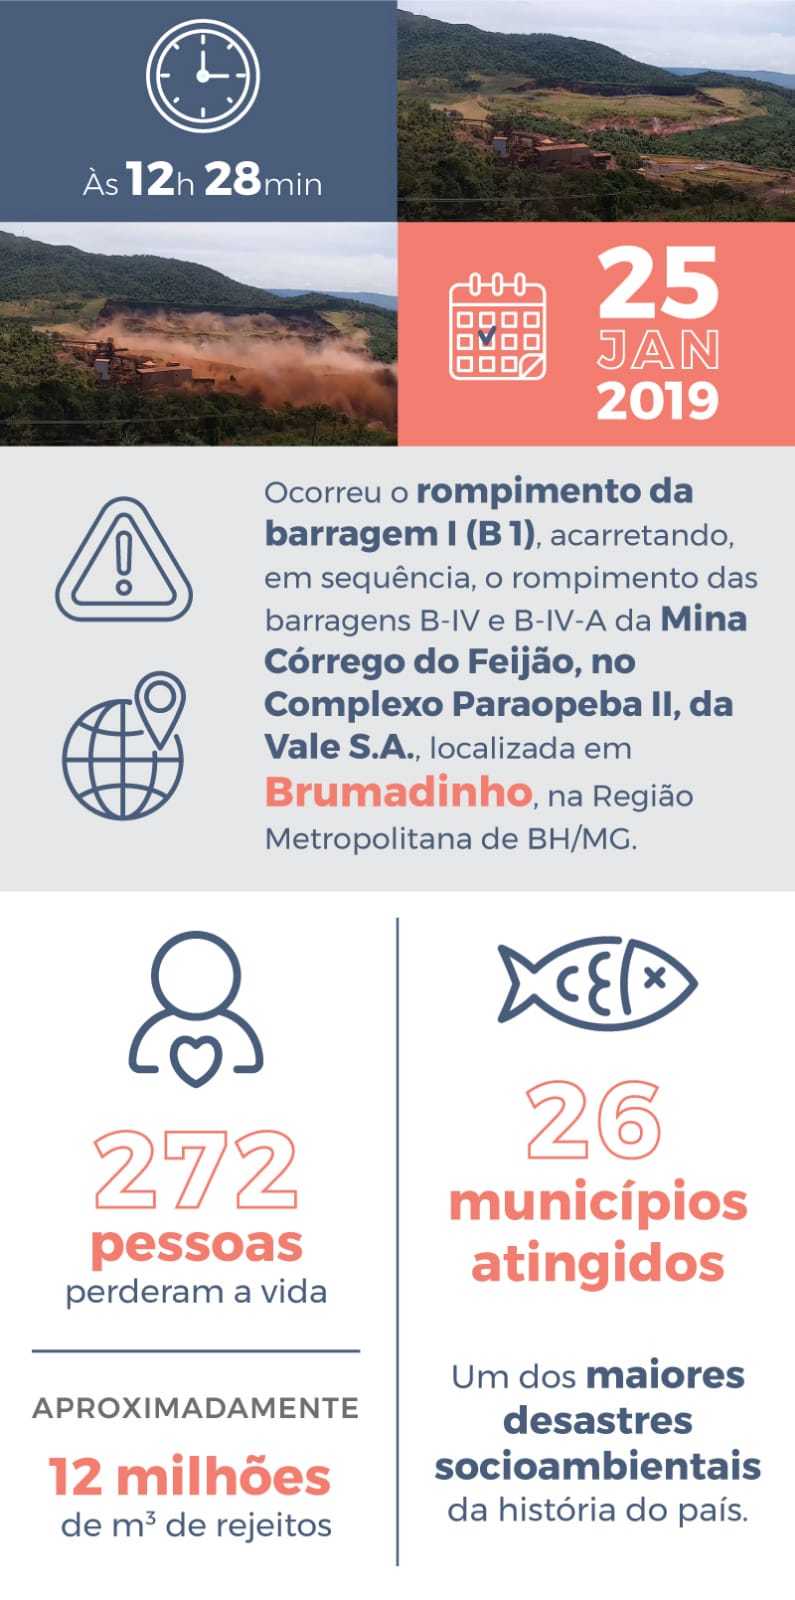 Fonte: Comitê Gestor Pró-Brumadinho (Clique para ampliar)